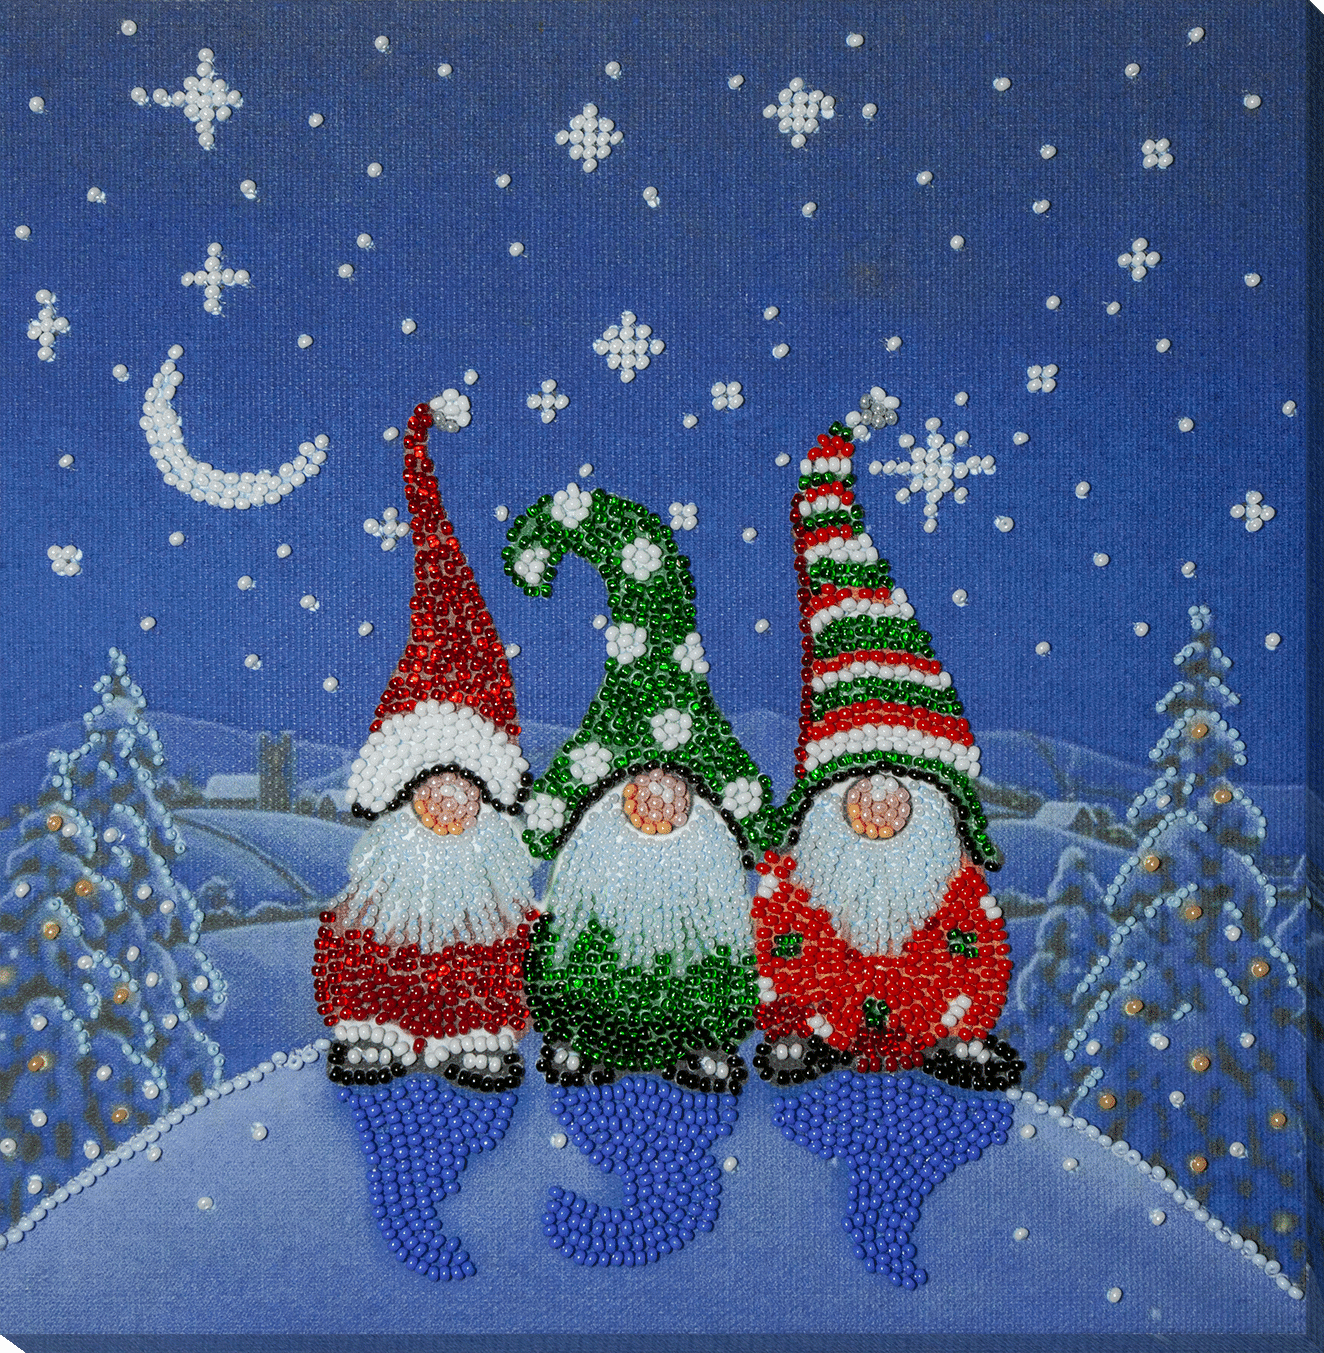 Christmas Diamond Painting Kits for Adults - Xmas Tree Santa Night